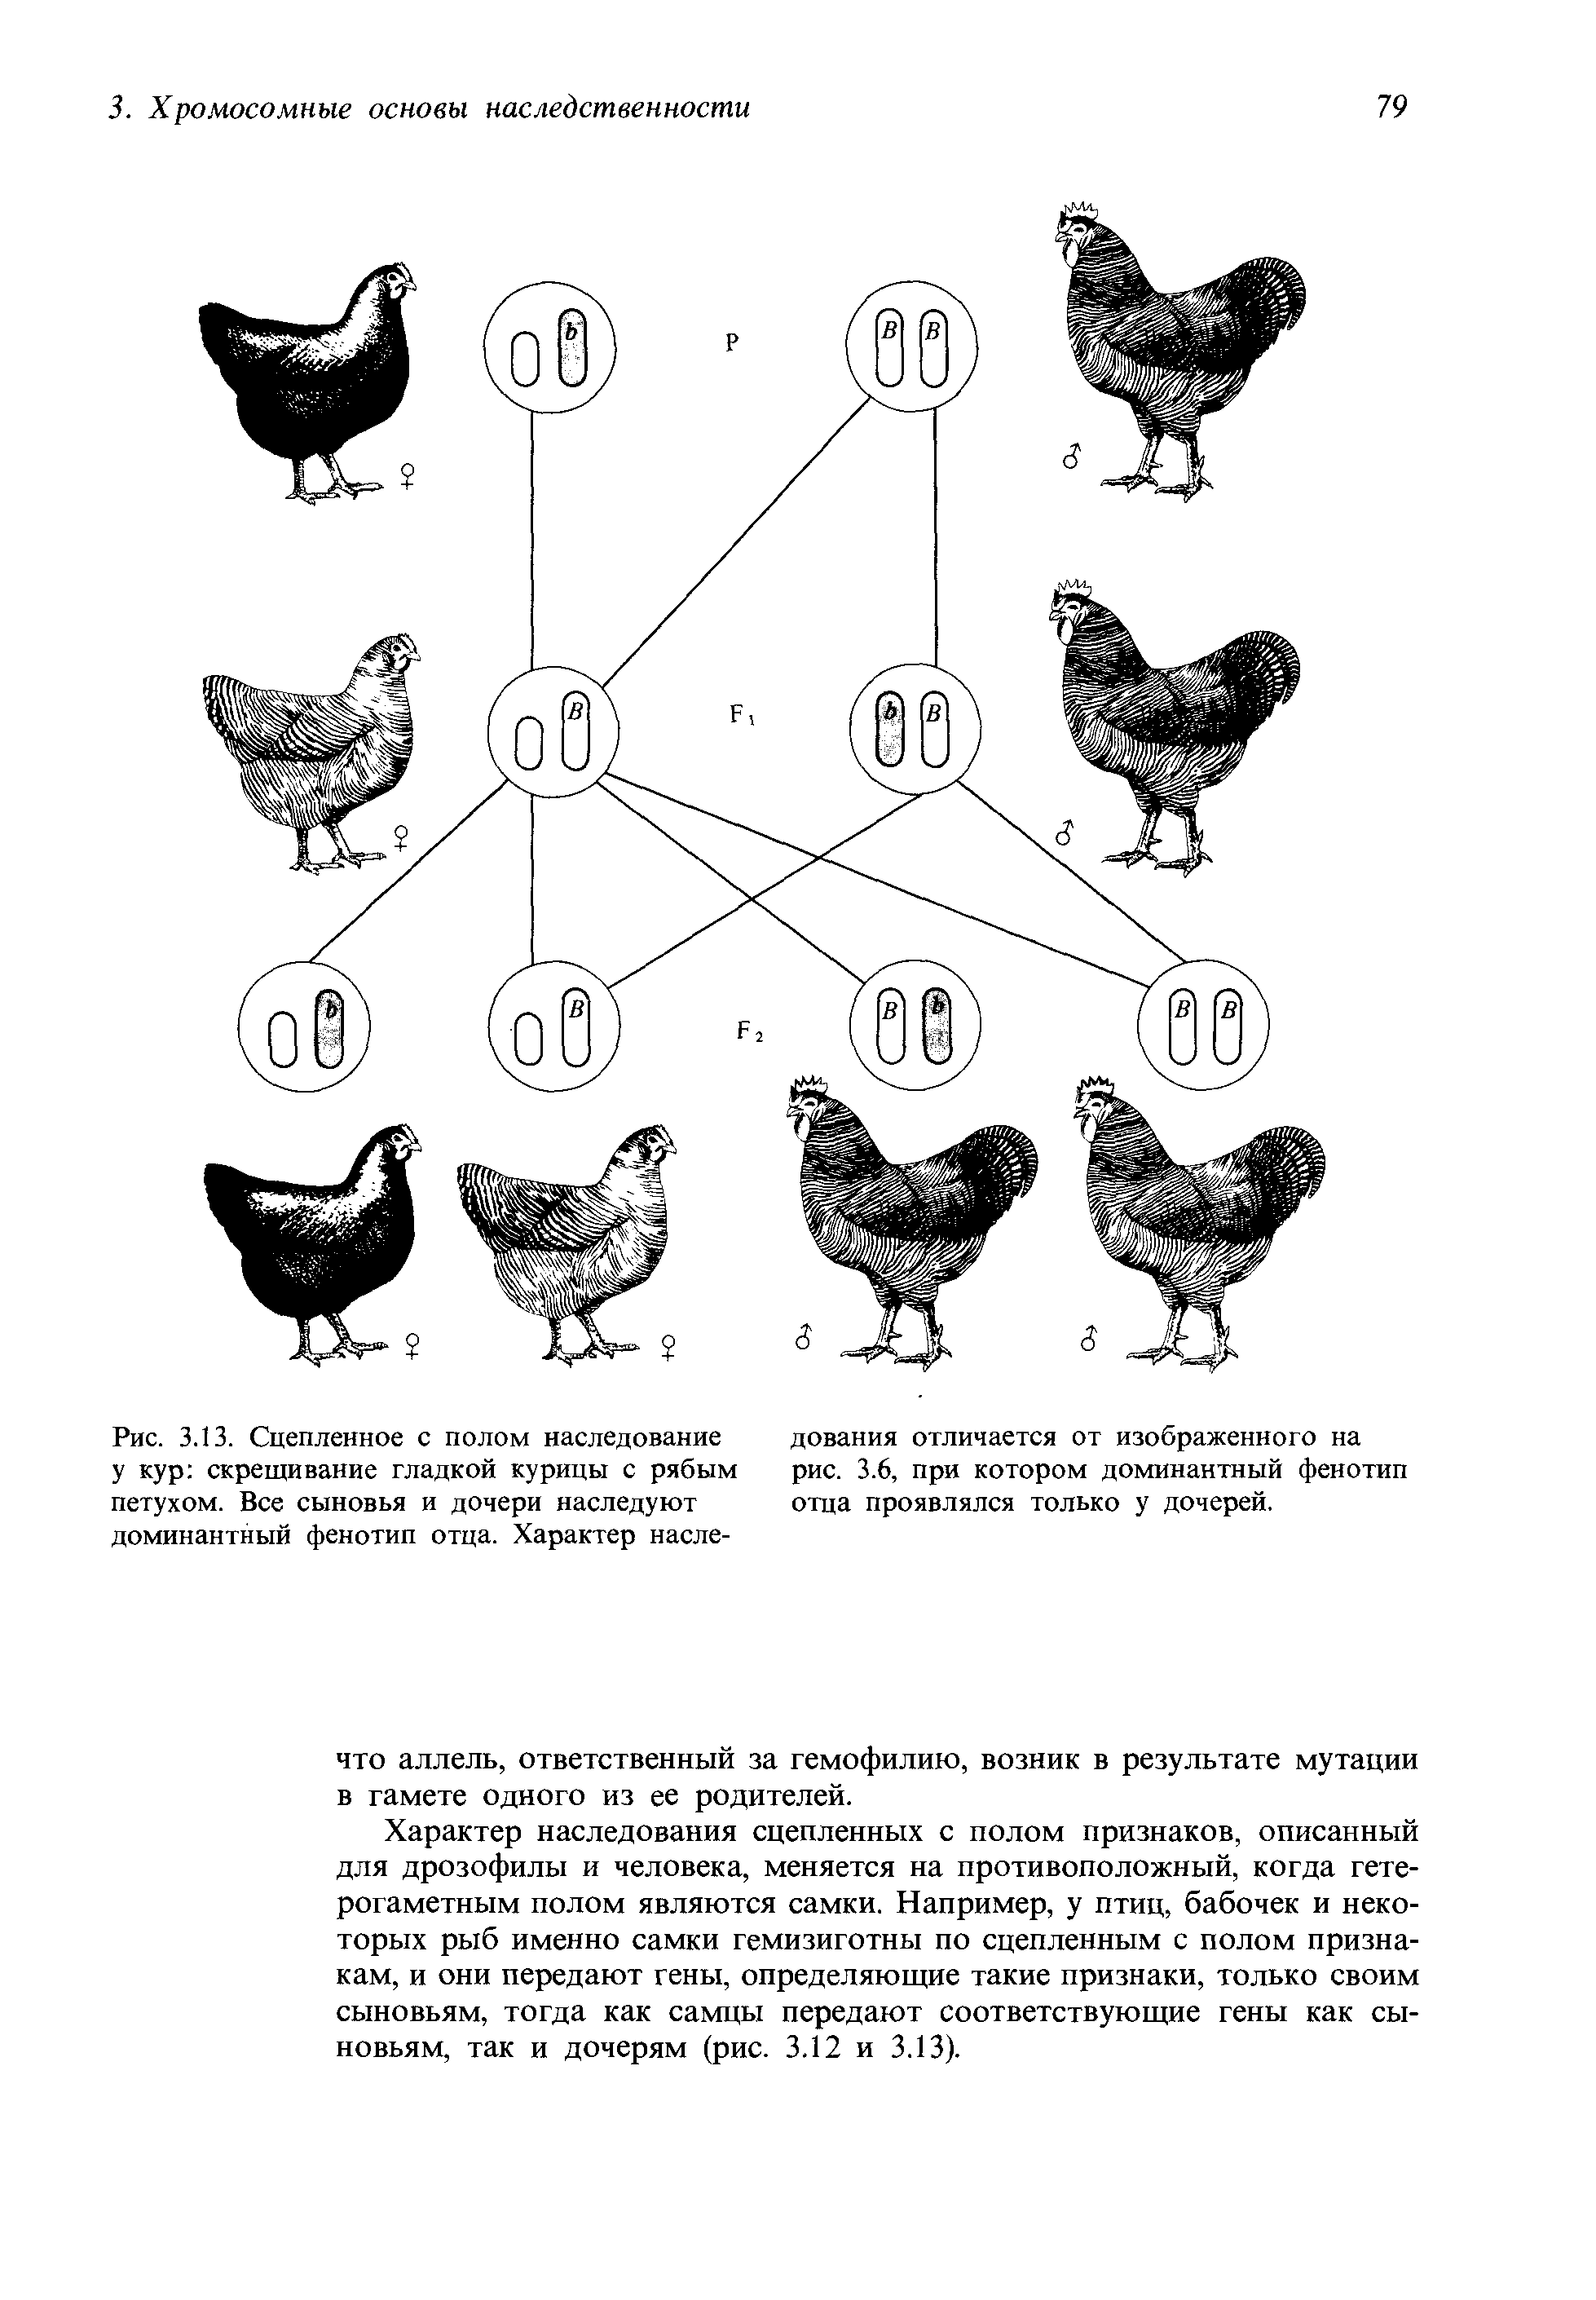 Скрестили бурую курицу. Таблица доминантных признаков у кур. Наследование окраски оперения у кур. Схема скрещивания кур. Наследование признаков у кур.